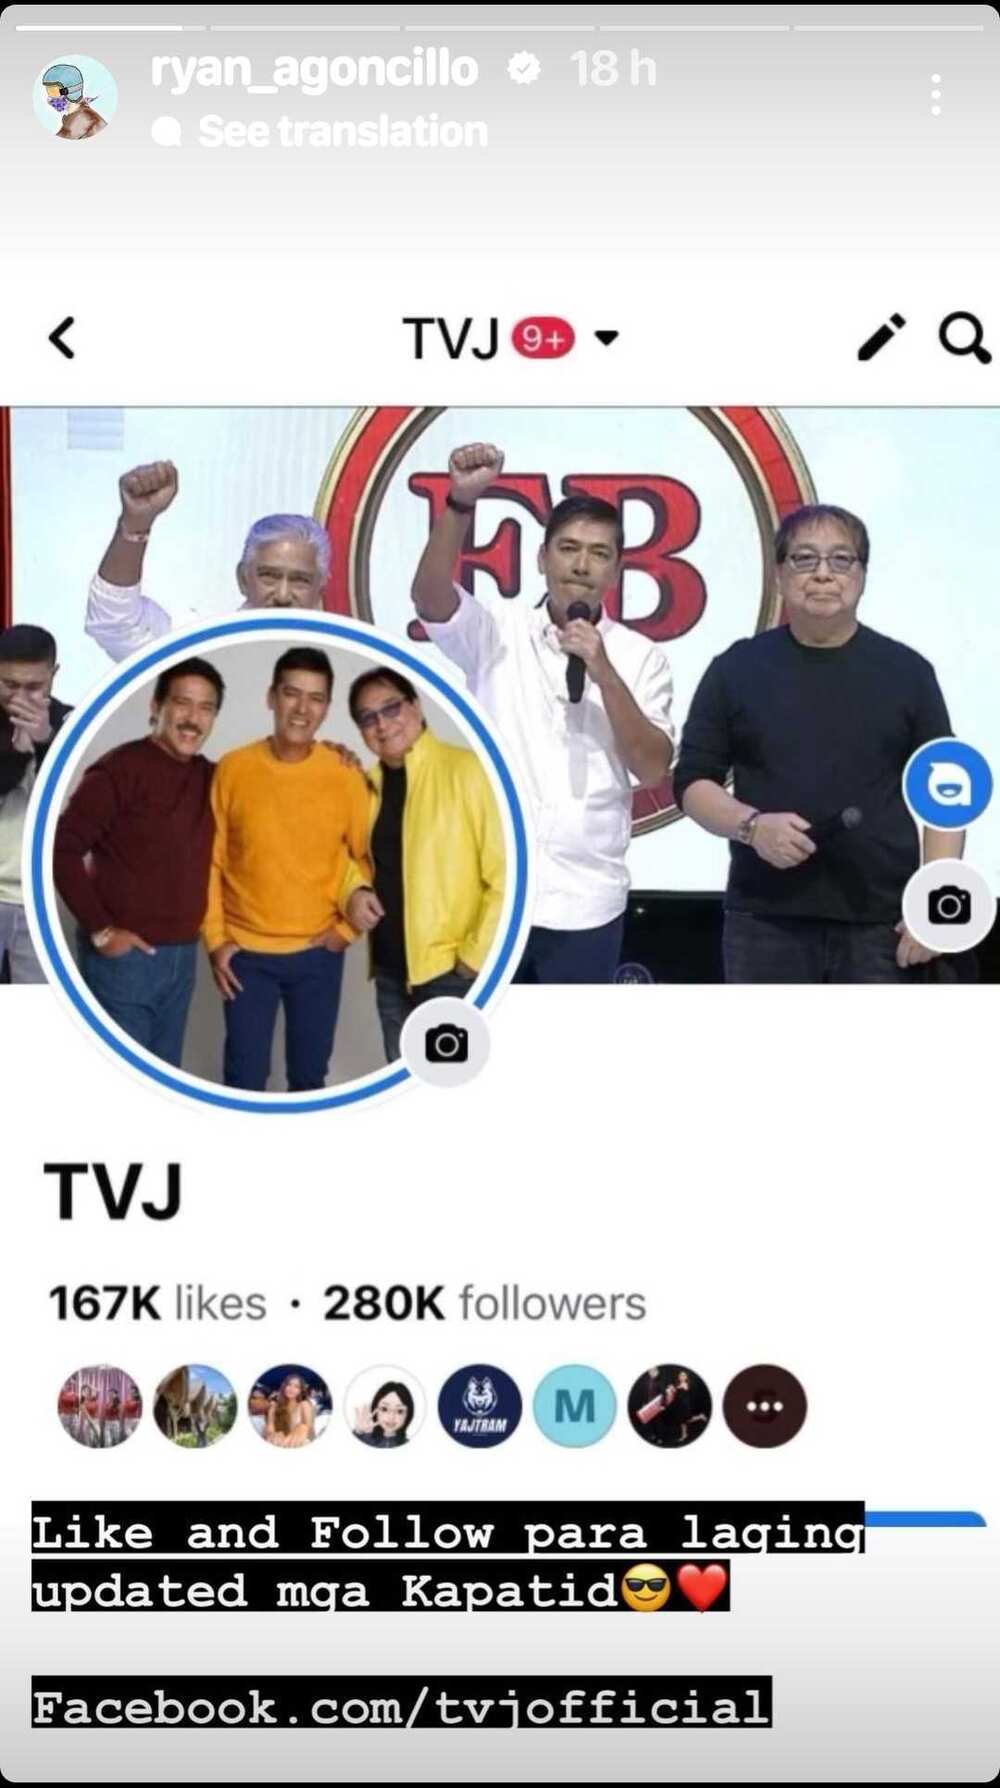 Ryan Agoncillo promotes TVJ’s page: “para laging updated mga Kapatid”